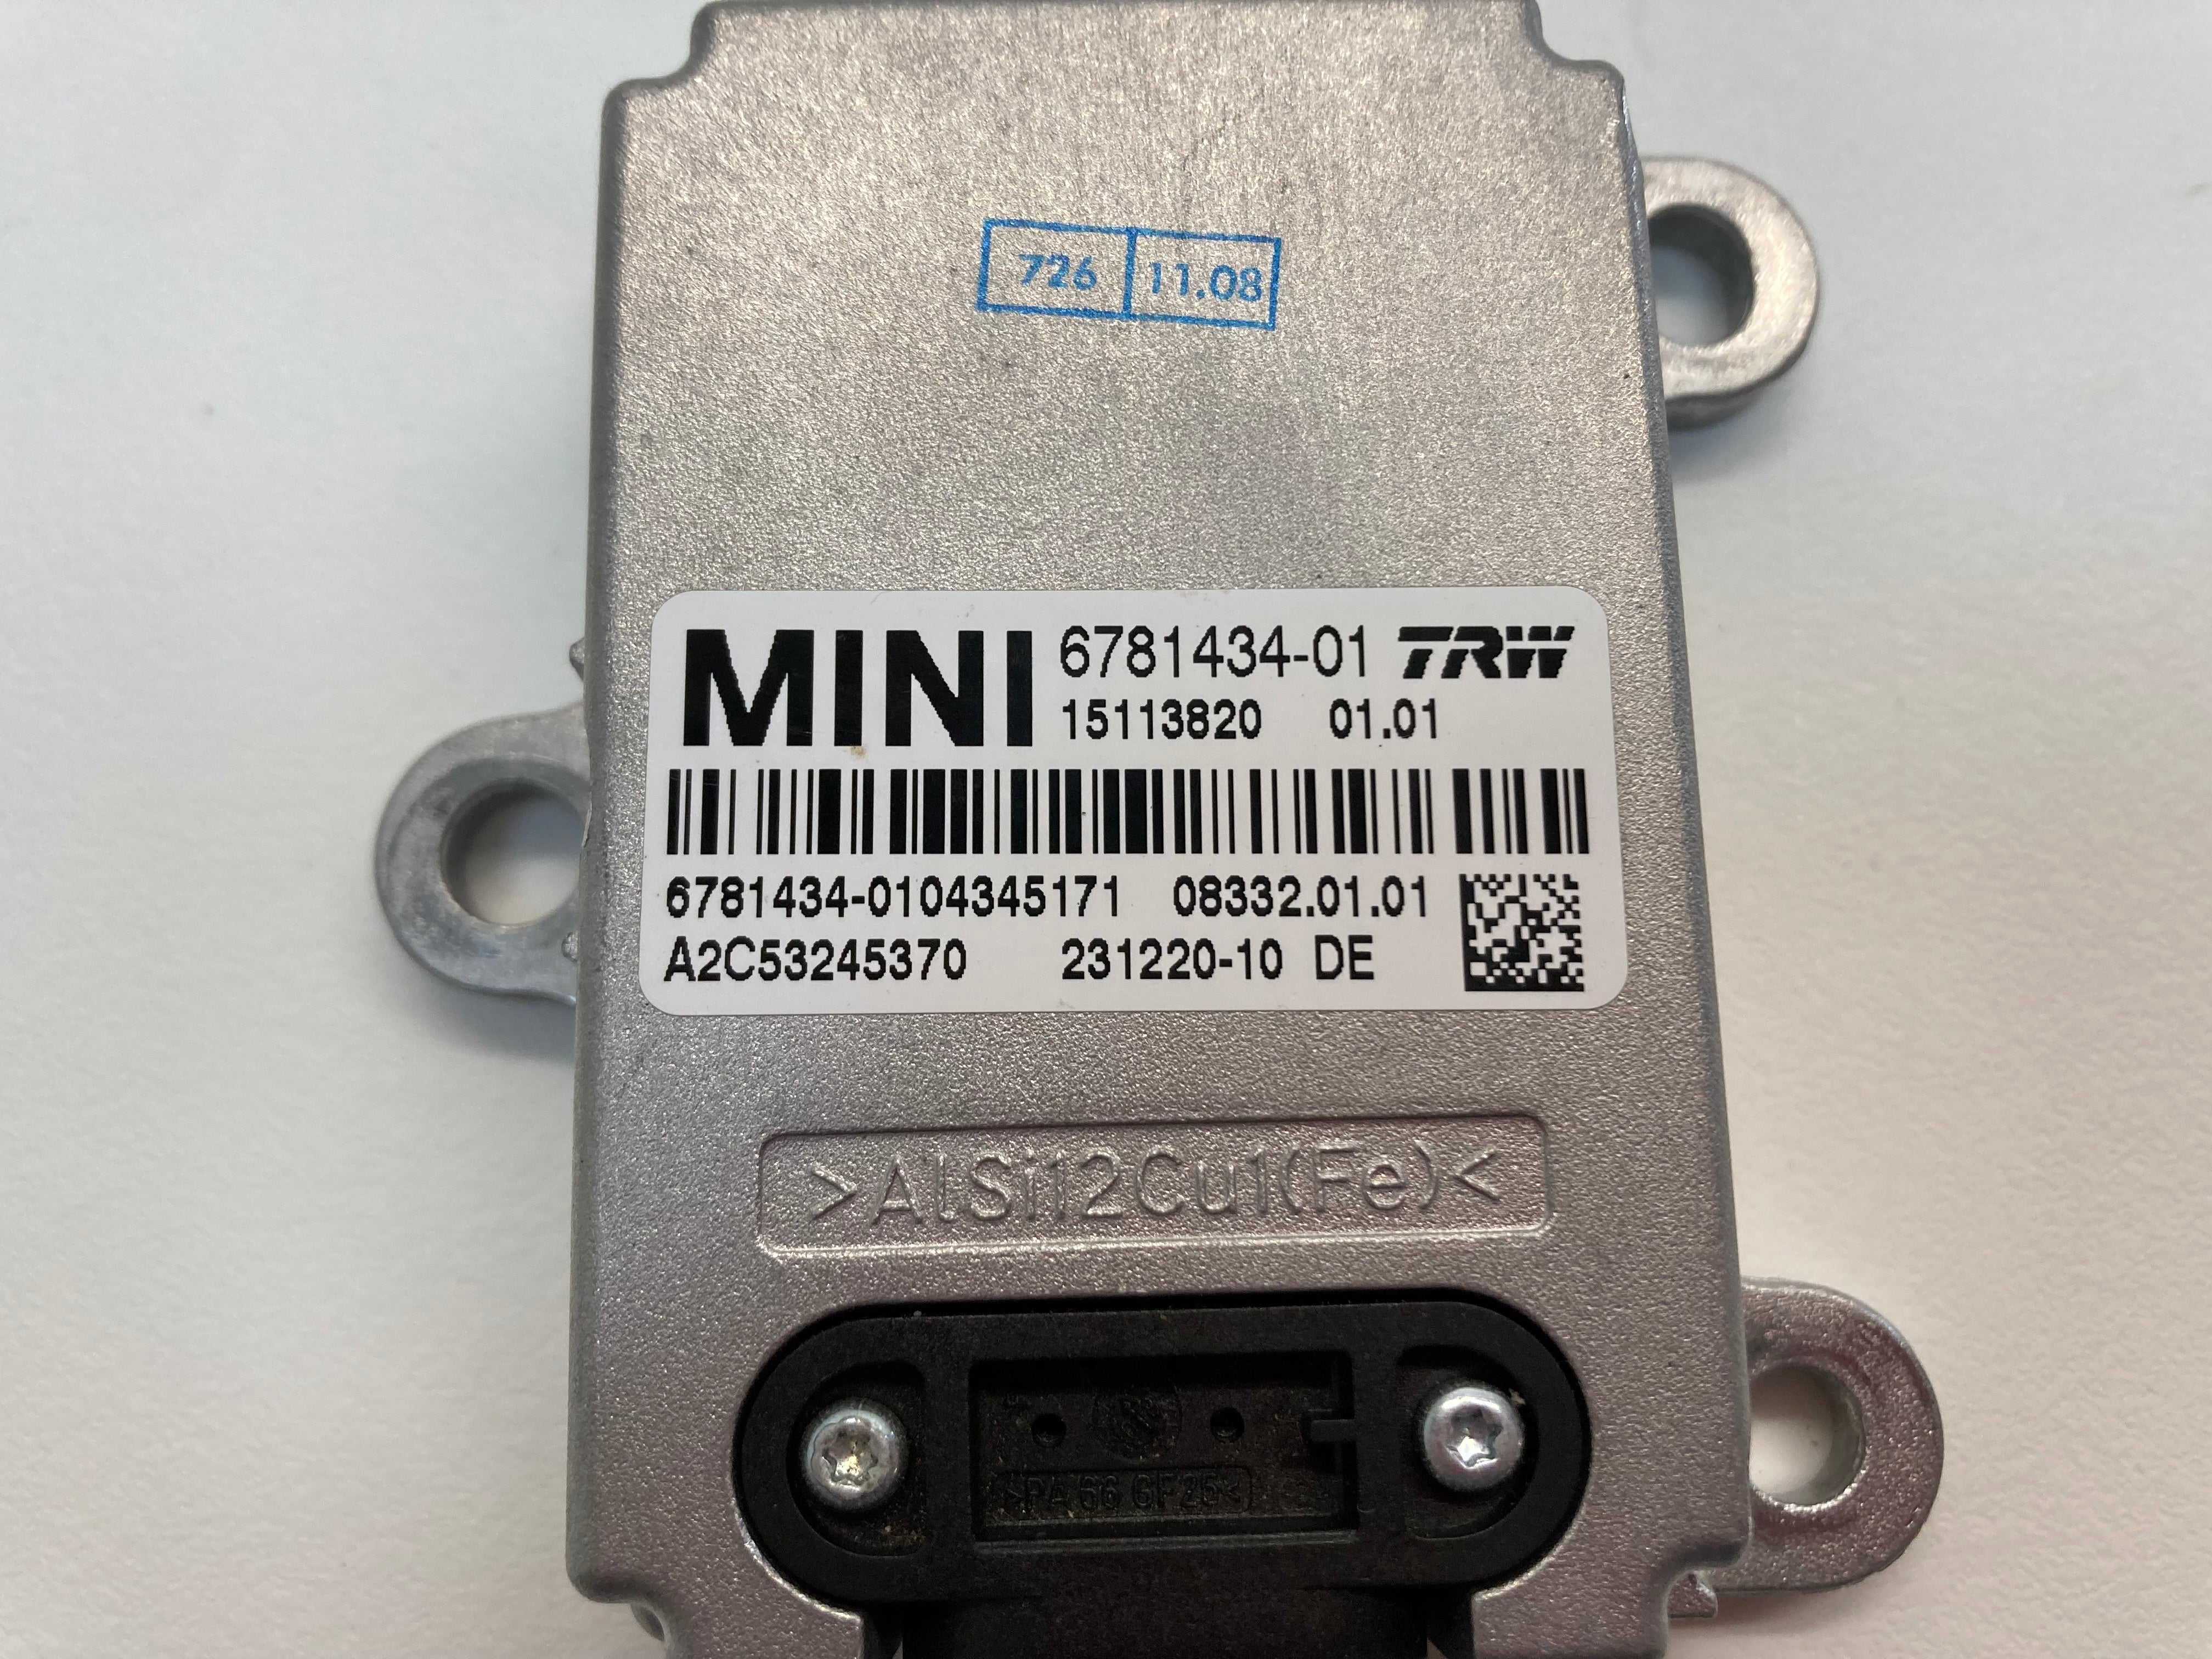 Mini Cooper Speed Control YAW Rate Sensor 34526781434 07-10 